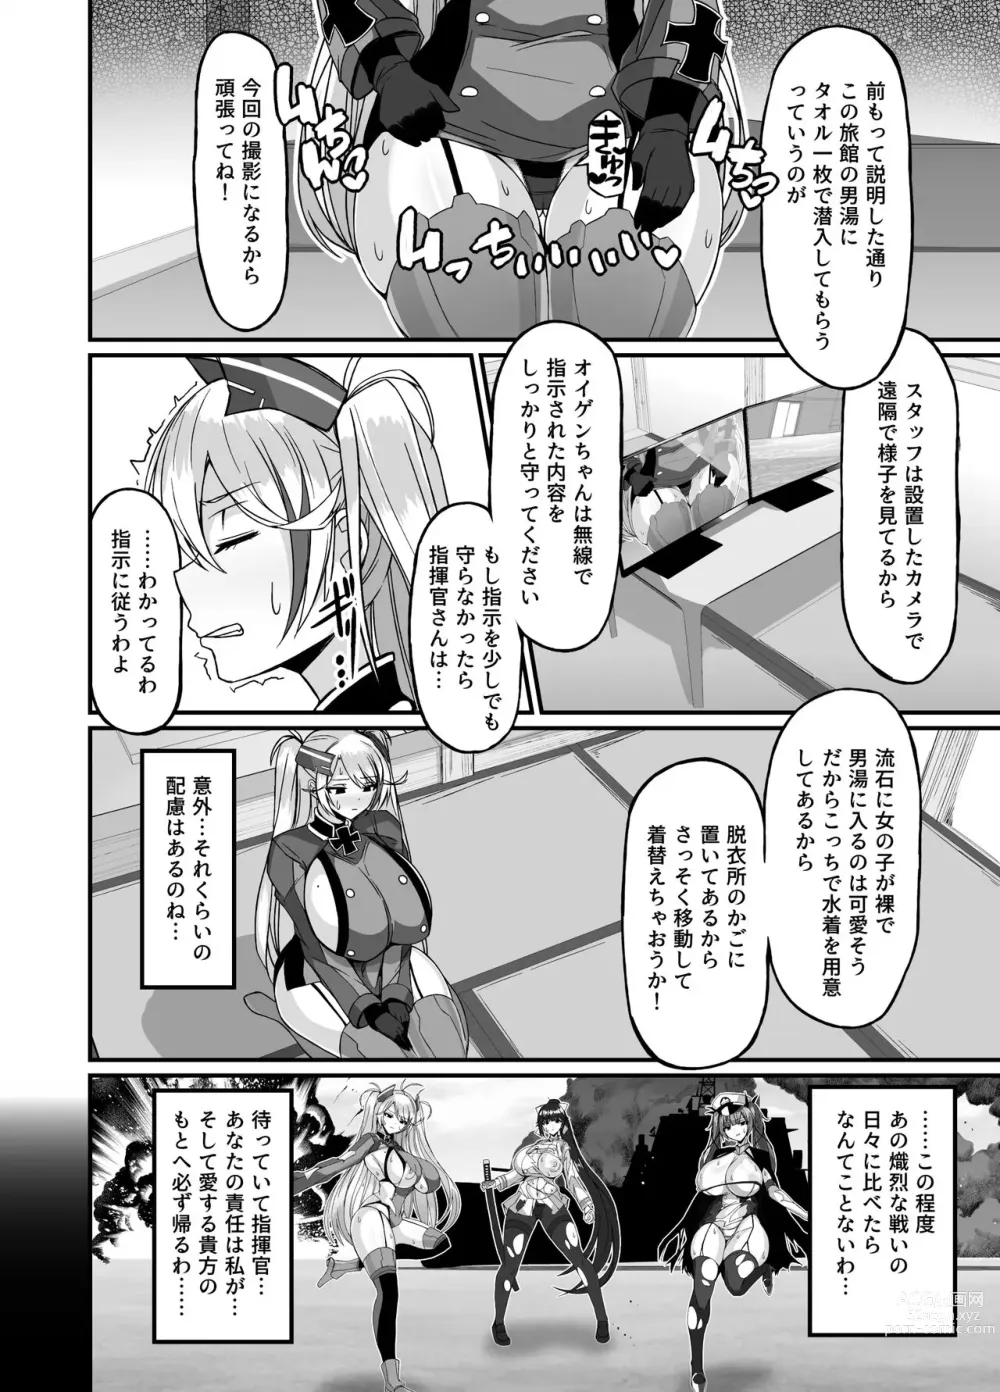 Page 2 of doujinshi Prinz Eugen Otokoyu Sennyuu Challenge